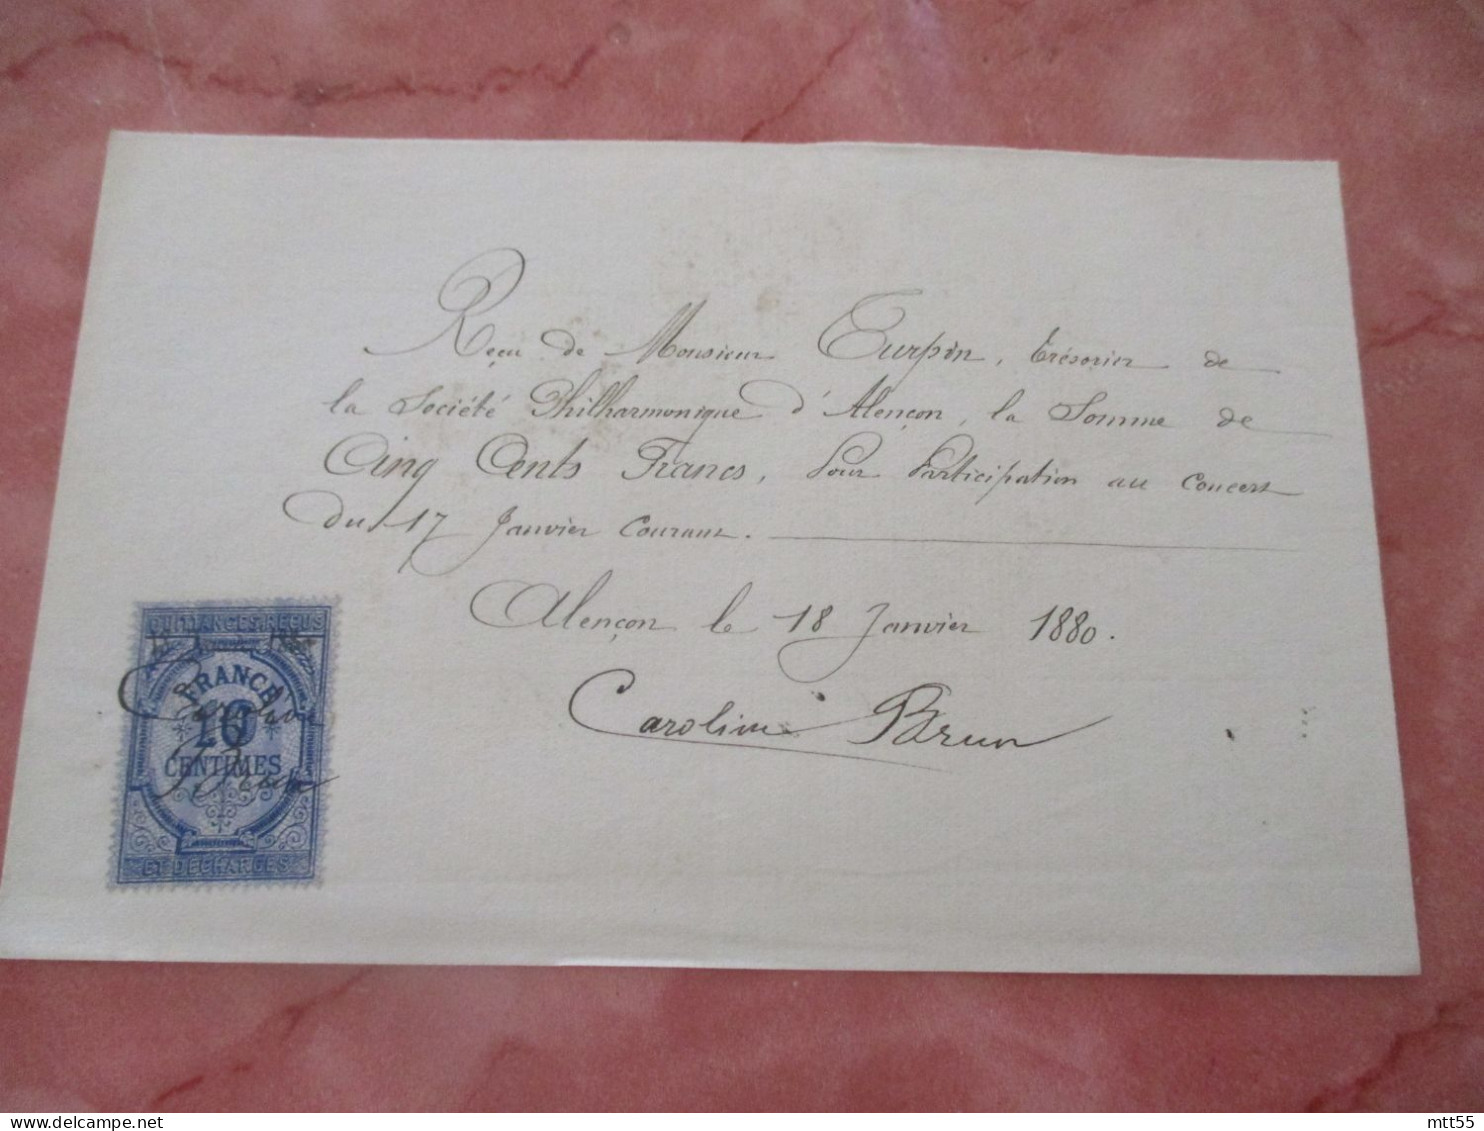 CAROLINE BRUN CHANTEUR CONSERVATOIRE QUITTANCE MANUSCITE TIMBRE FISCAL 1885 CONCERCERT A ALENCON AUTOGRAPHE - Manuscrits